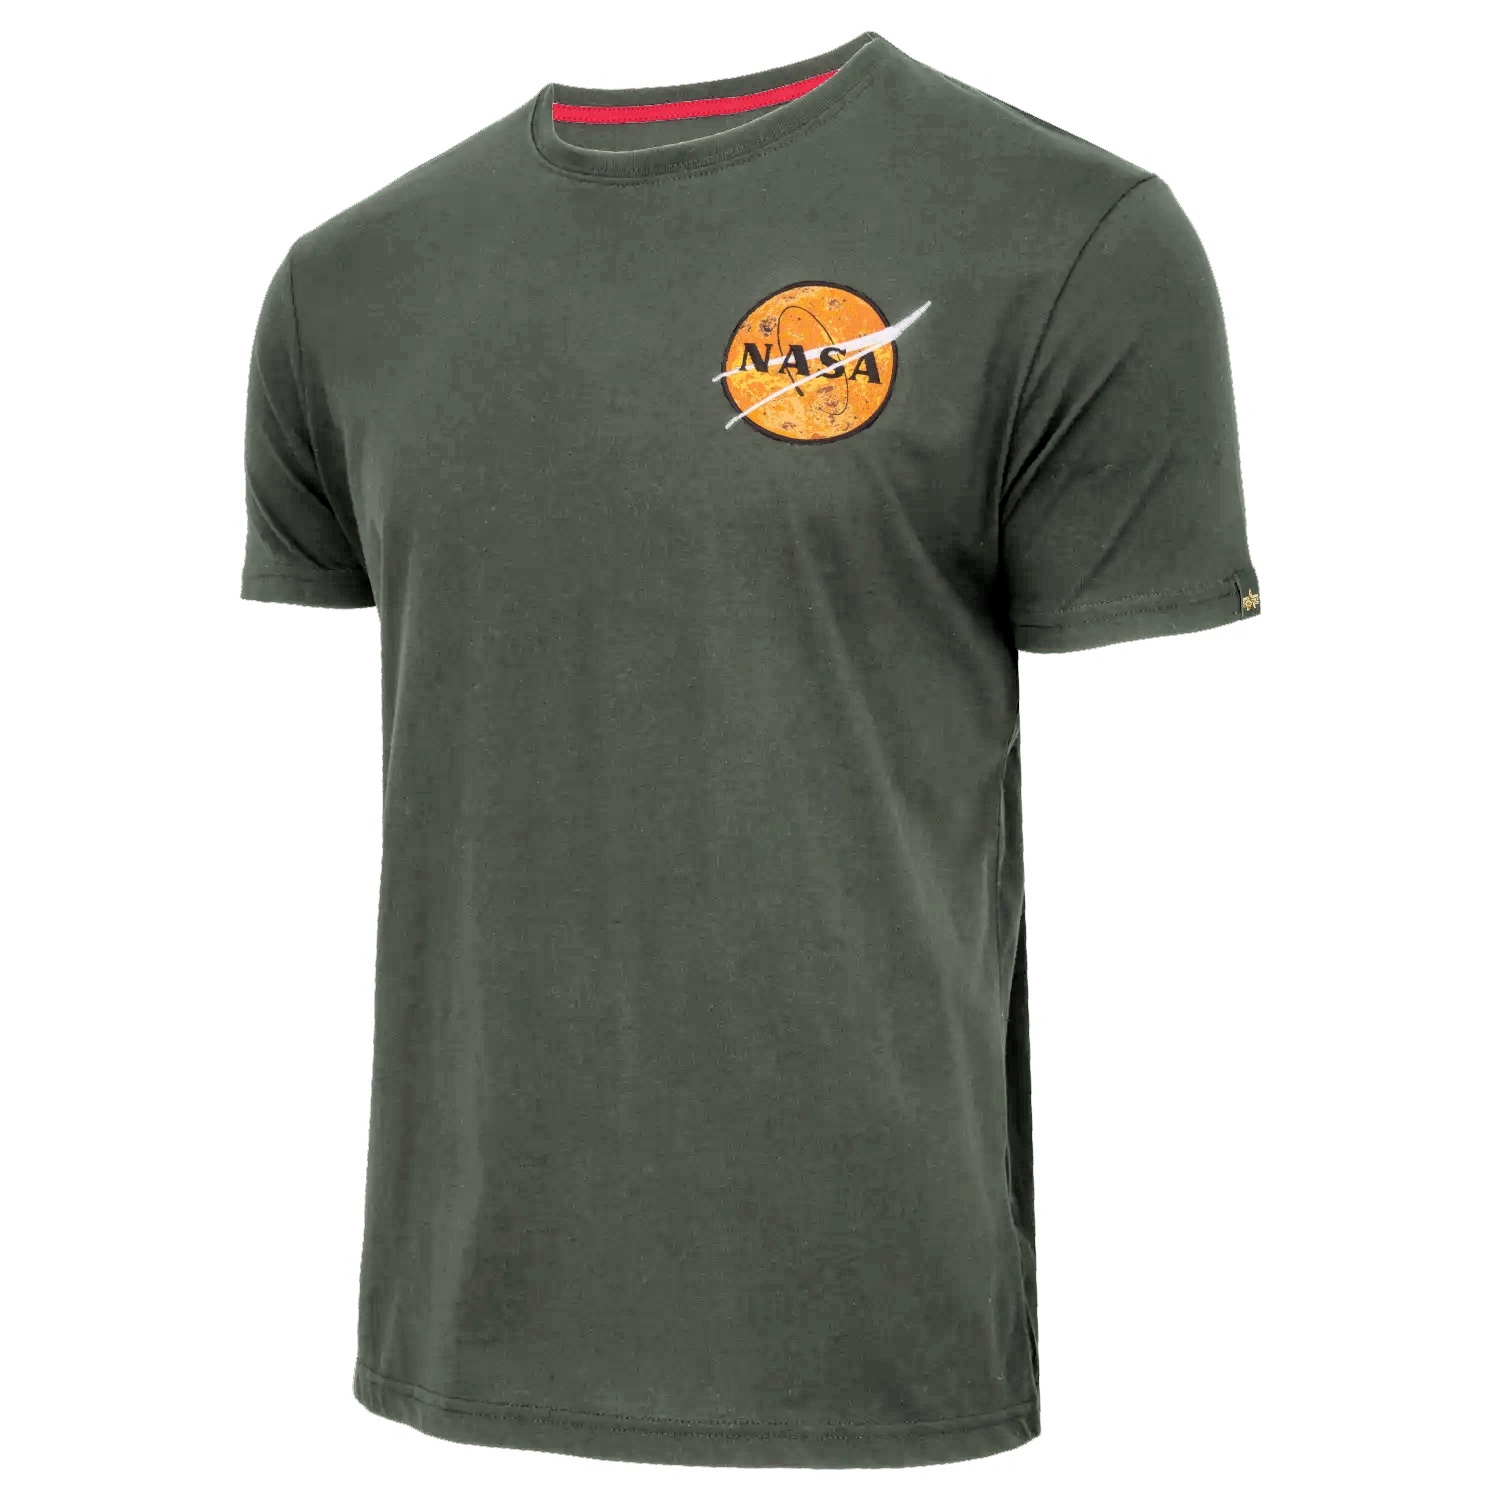 Koszulka Alpha Industries NASA Davinci T 136508 142 - Zielona